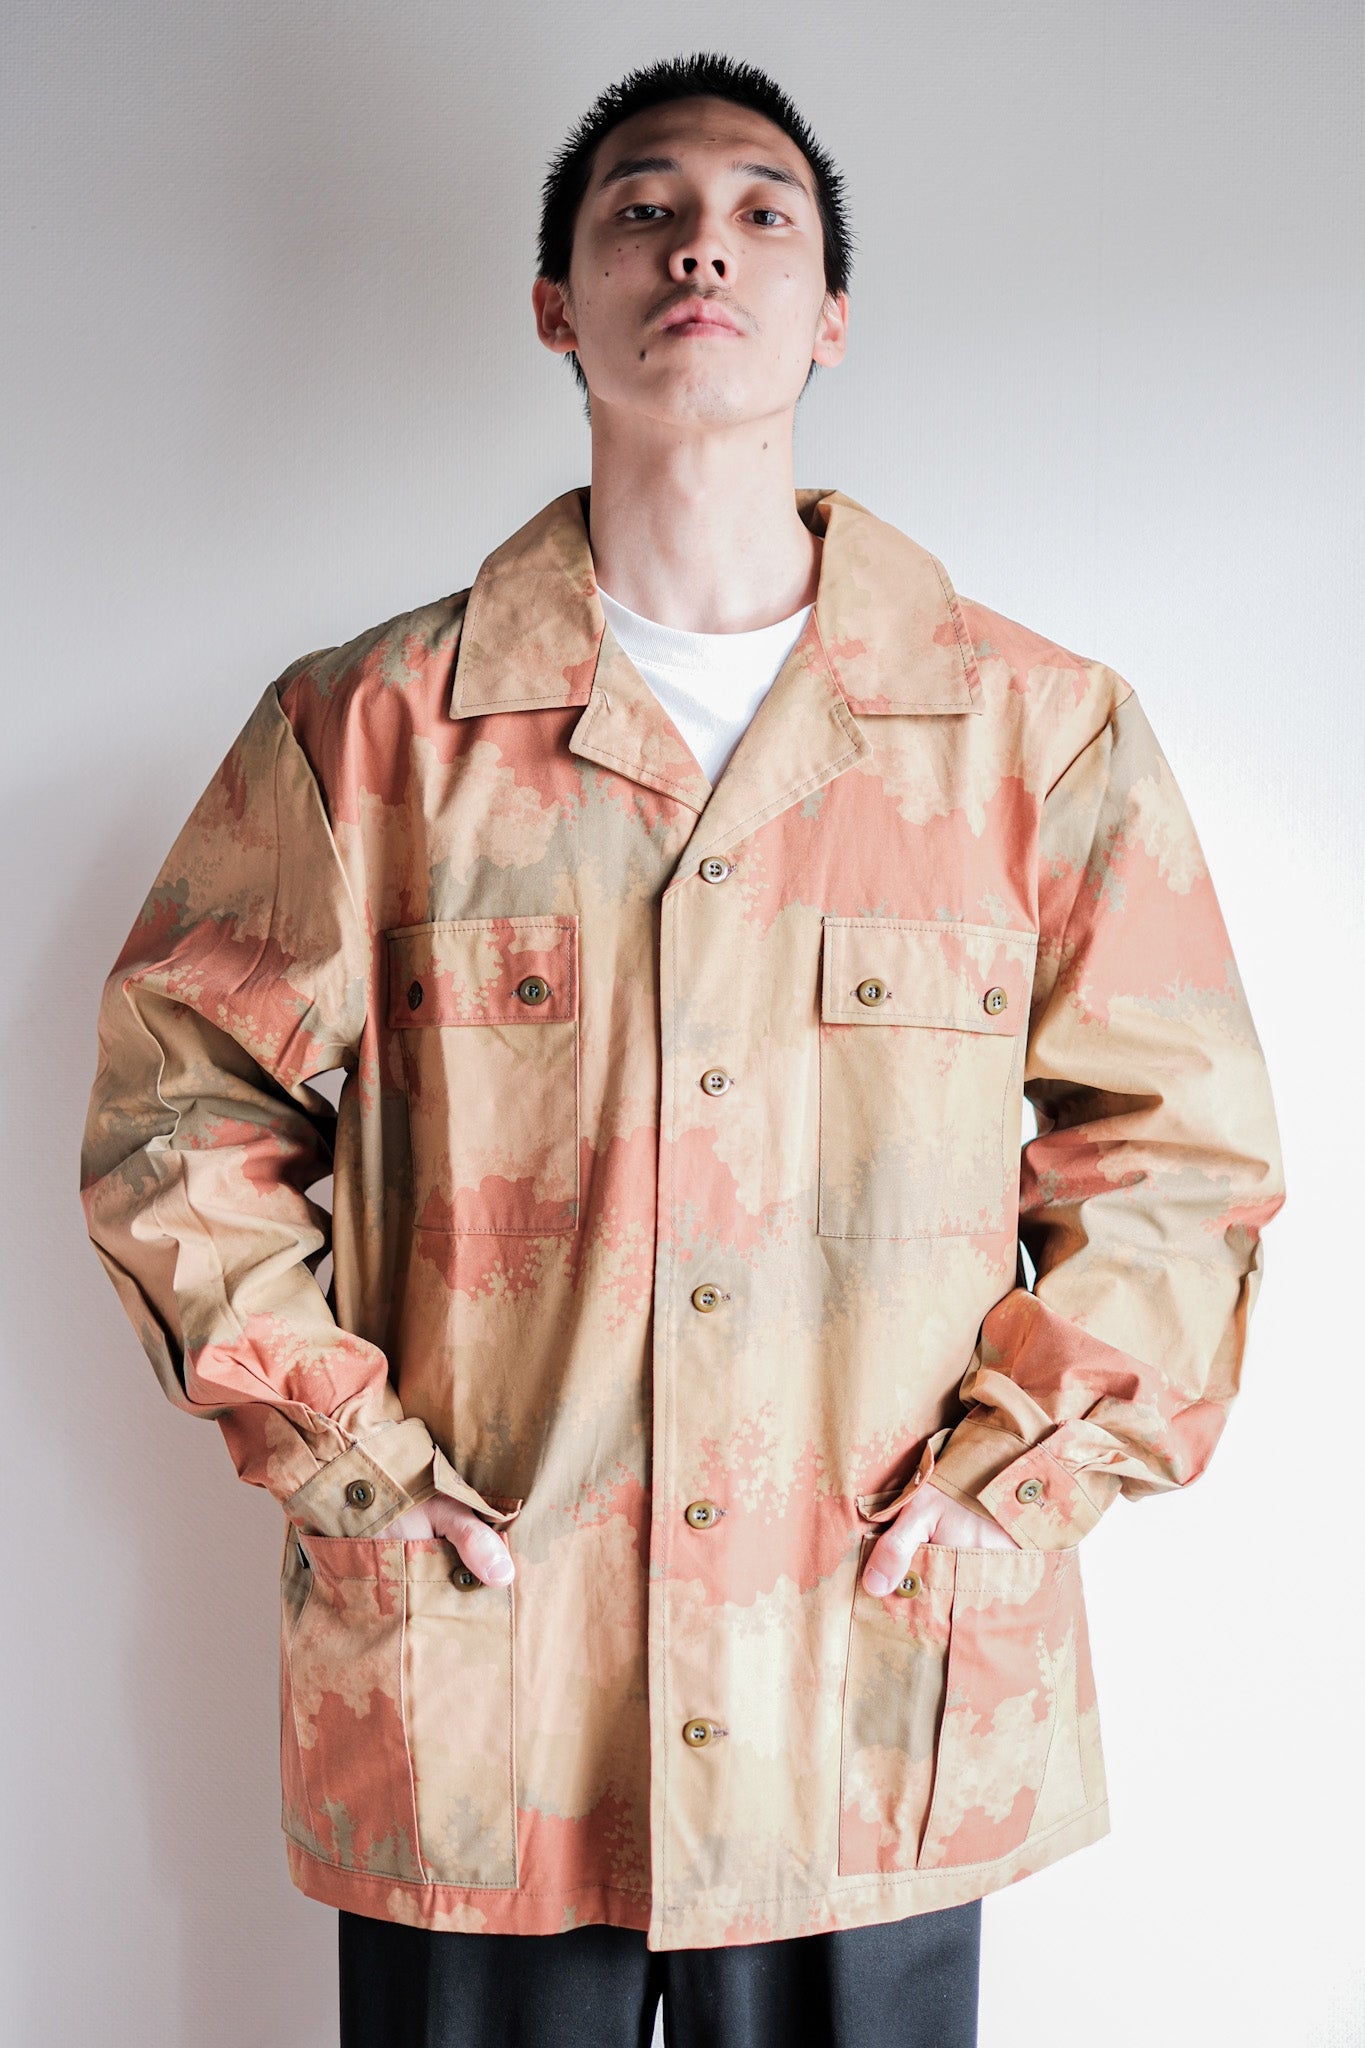 Czea lovakian army detector pattern camouflage field jacket size. 52 "test sample" "dead stock"